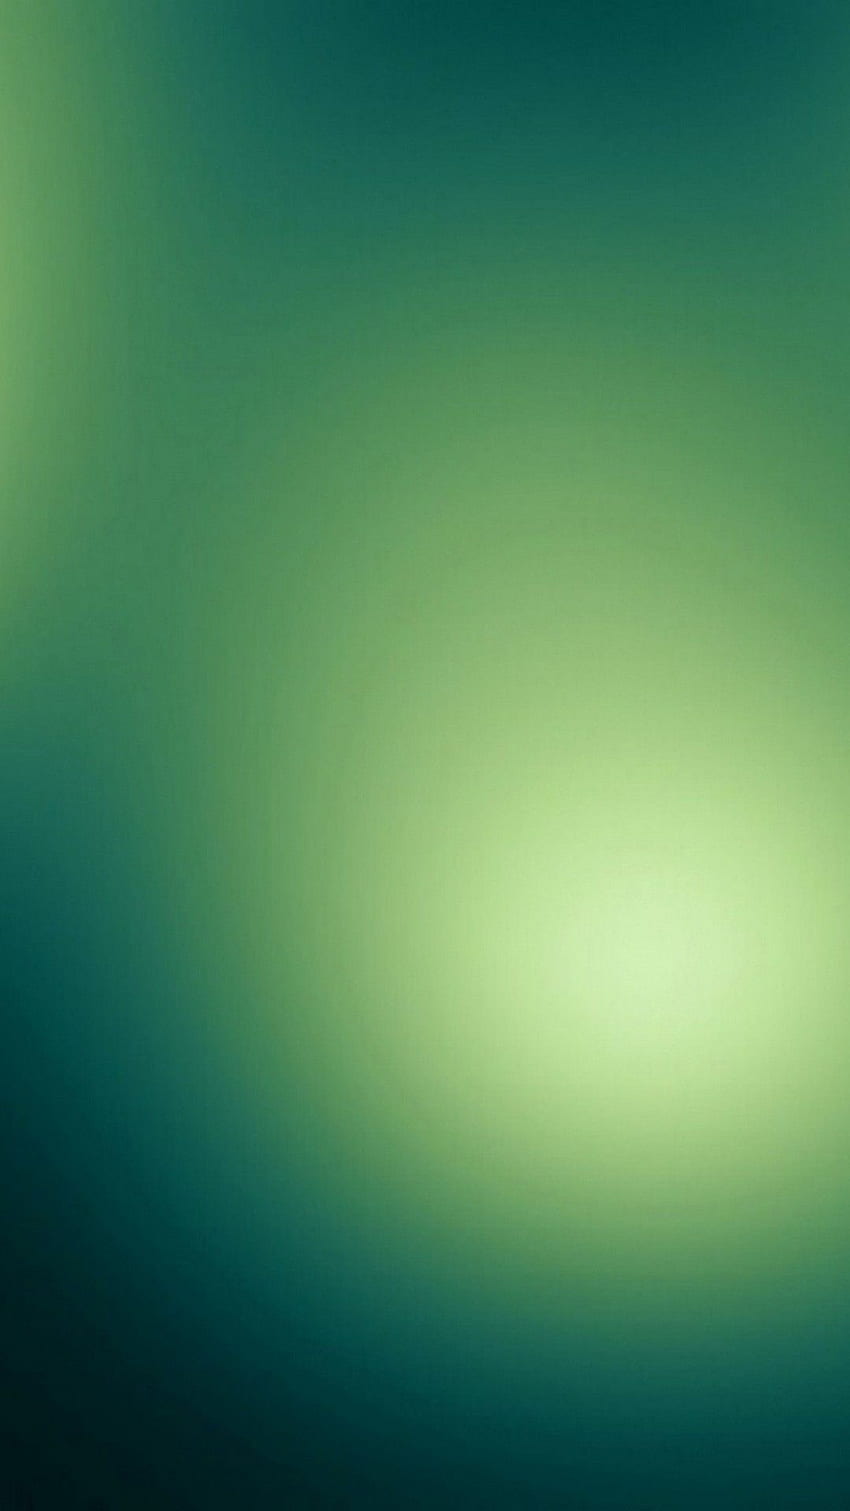 Verde smeraldo Android con risoluzione - verde menta iPhone, Emerald Galaxy Sfondo del telefono HD